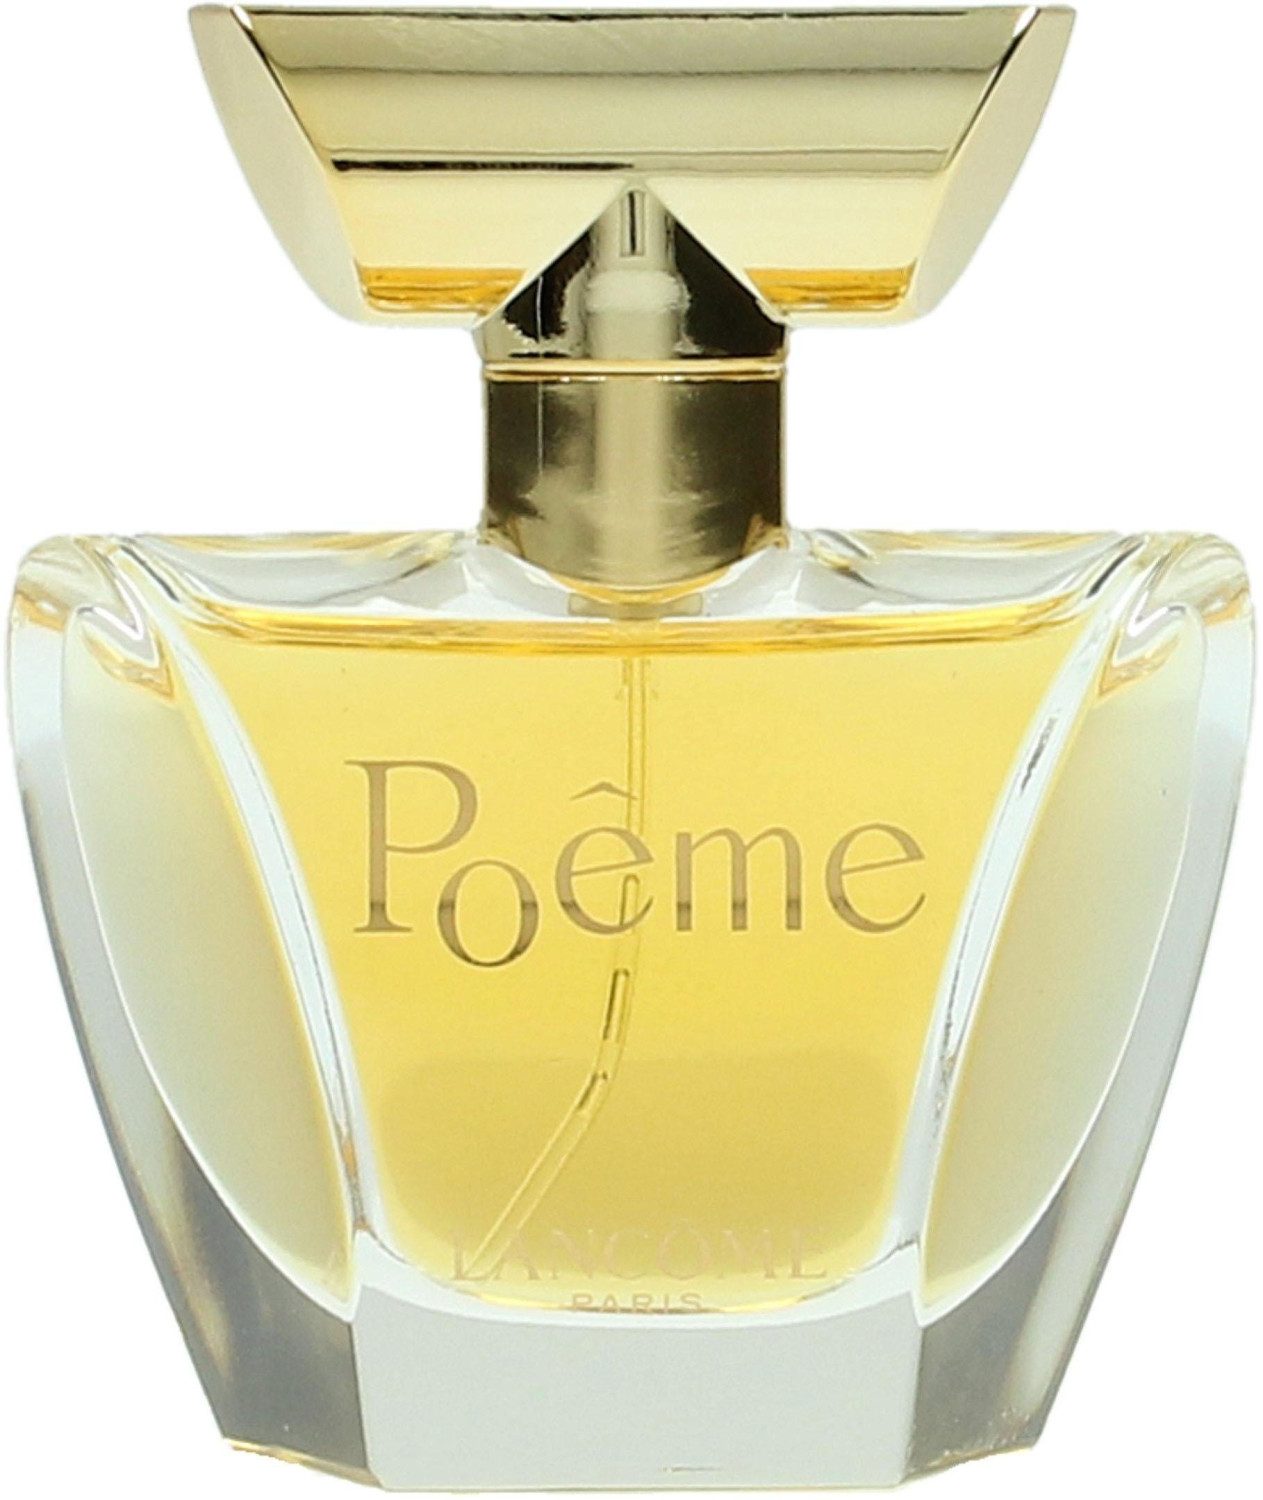 Buy Lancôme Poême Eau de Parfum (30ml) from £29.95 (Today) – Best Deals